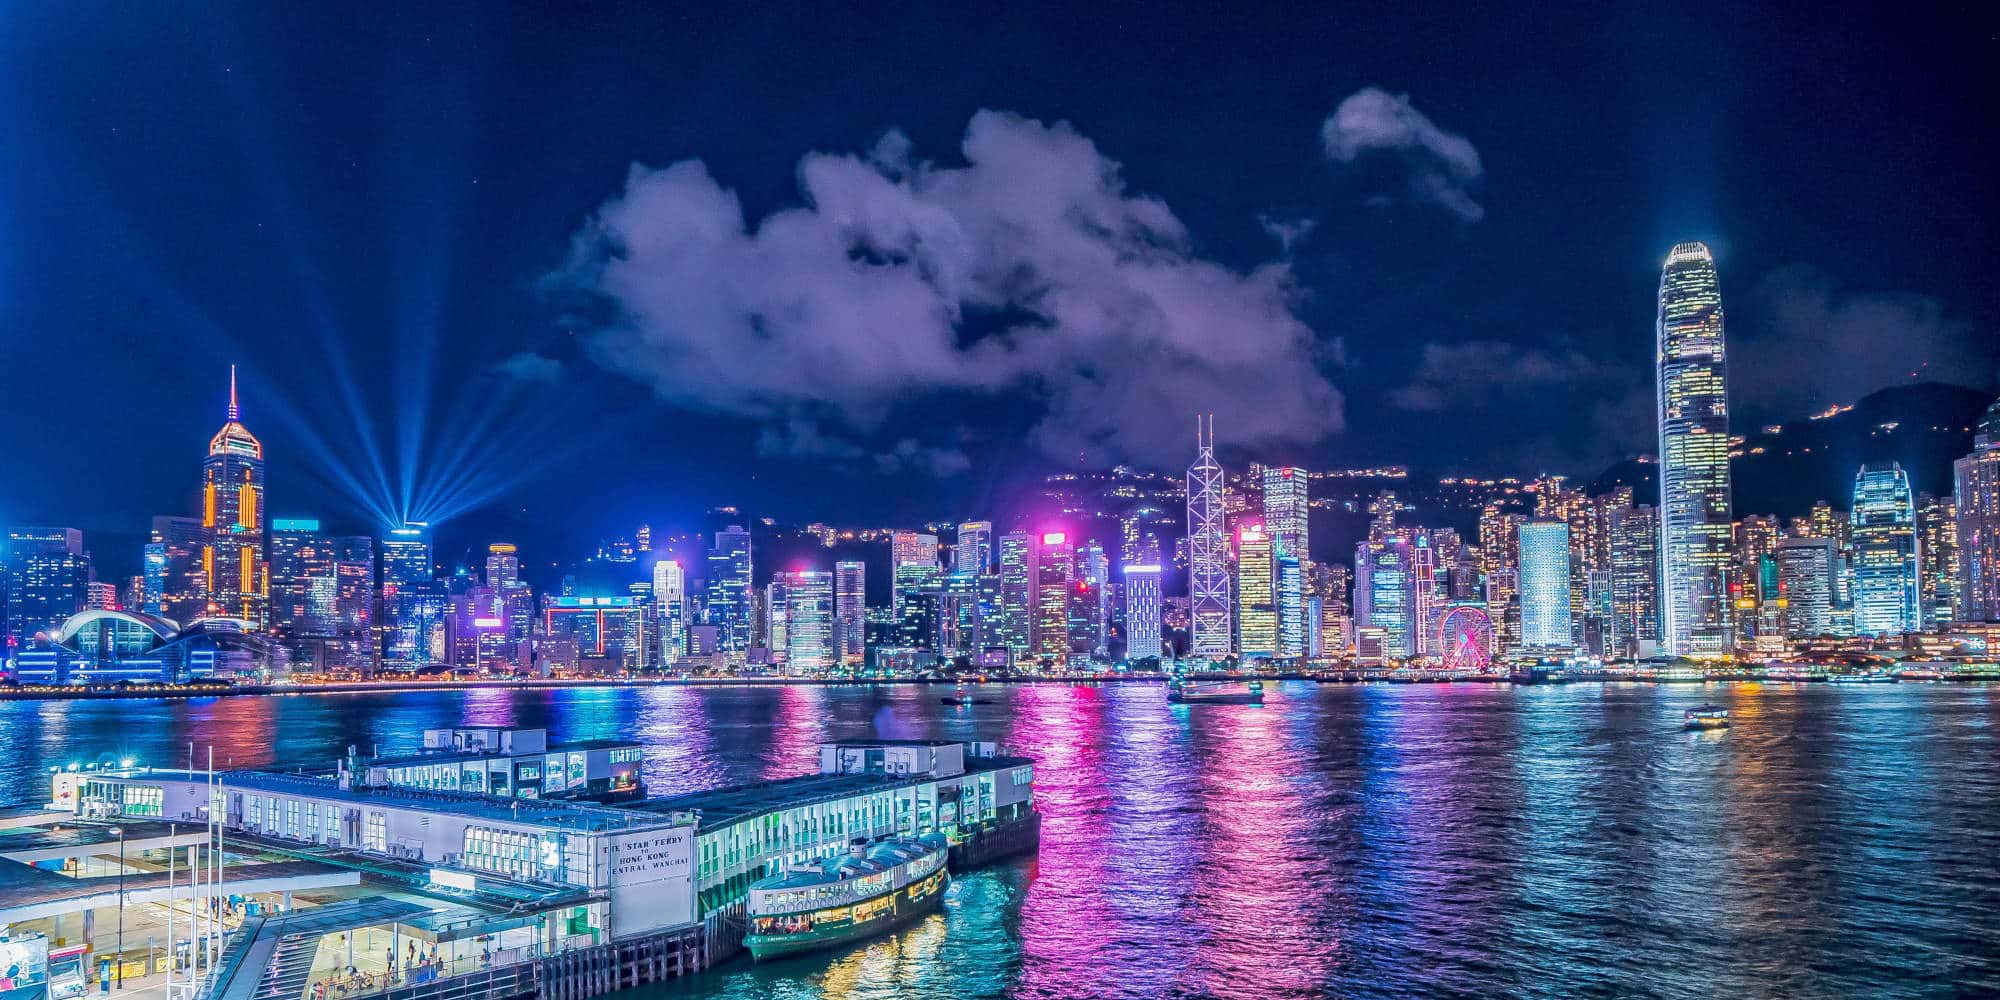 Εντυπωσιακή εικόνα από την πόλη του Χονγκ Κονγκ